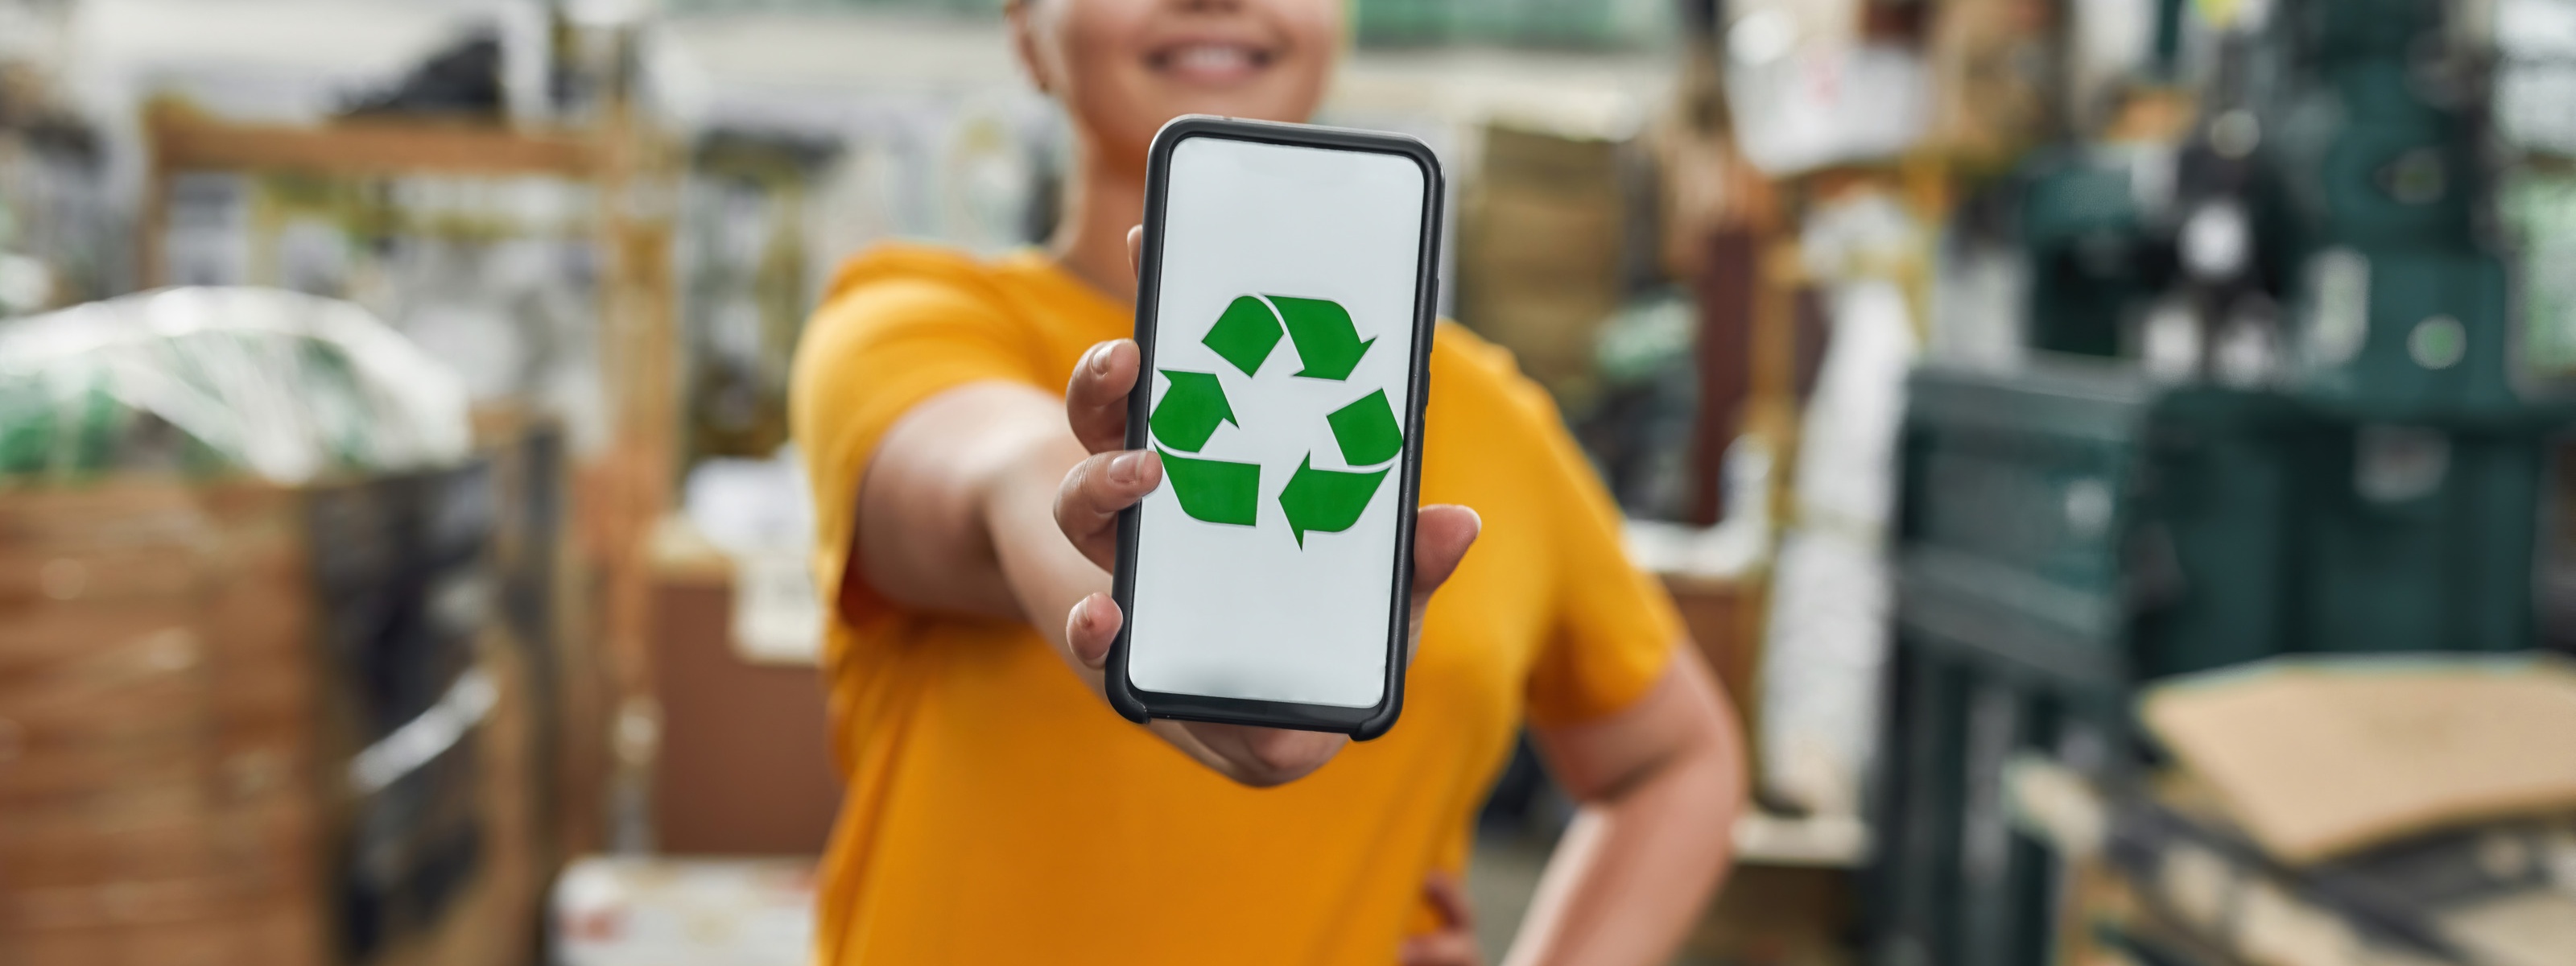 Nahaufnahme von einem Smartphone mit grünem Recyling Icon, das von einer Person mit orangem T-Shirt gehalten wird